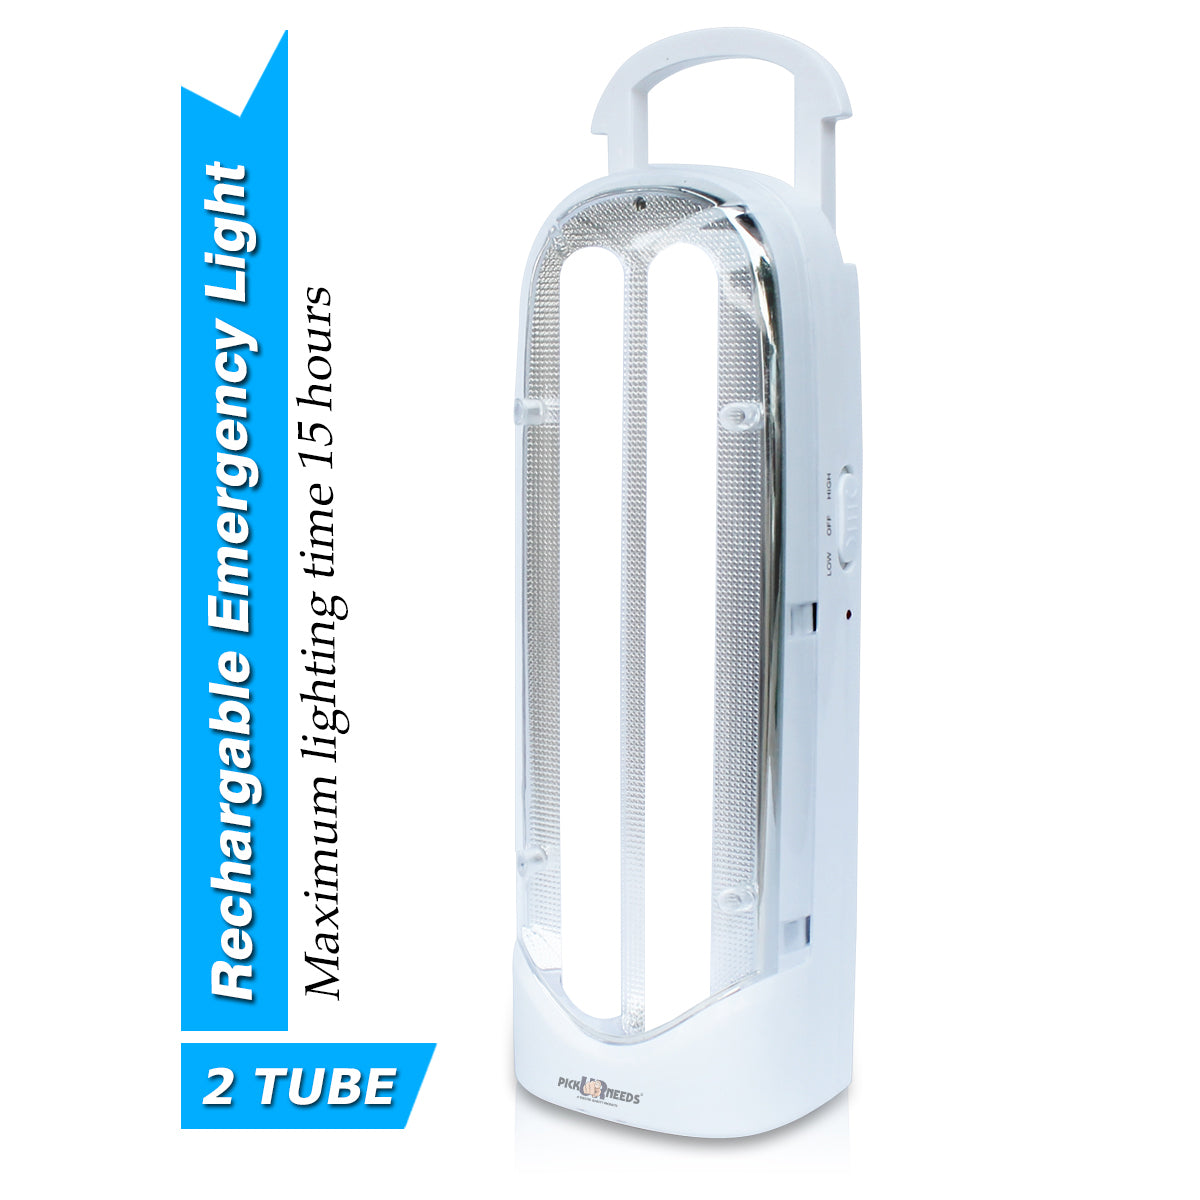 Pick Ur Needs Rechargeable Light Tube SMD Power Full Backup 15 hrs Lantern Emergency Light